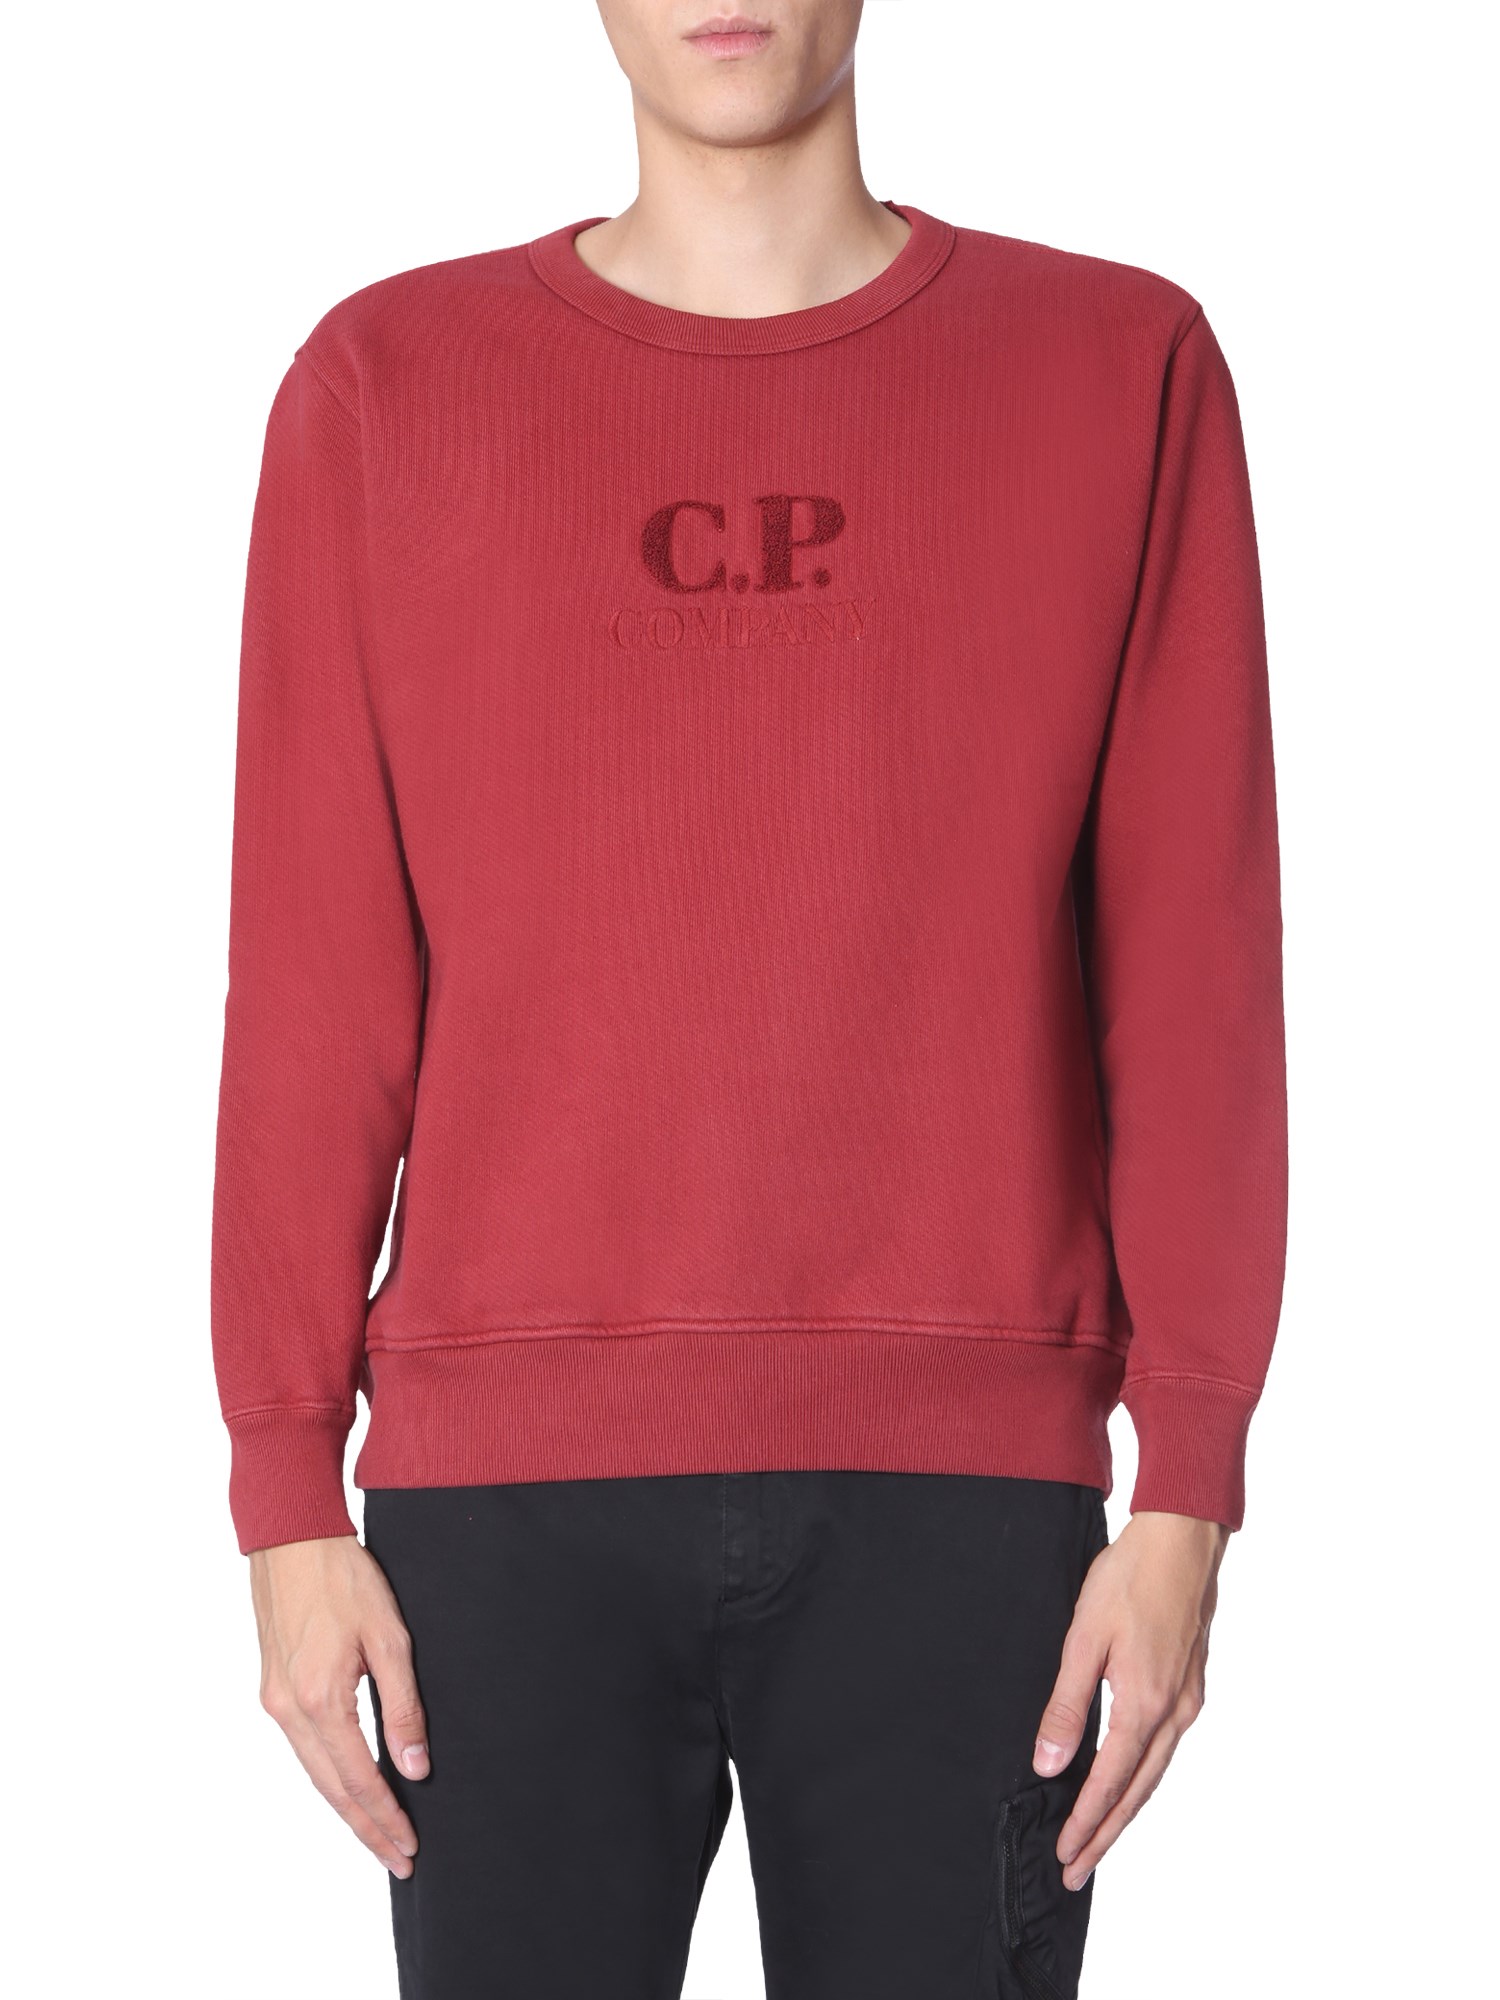 c.p. company "diagonal fleece" sweatshirt